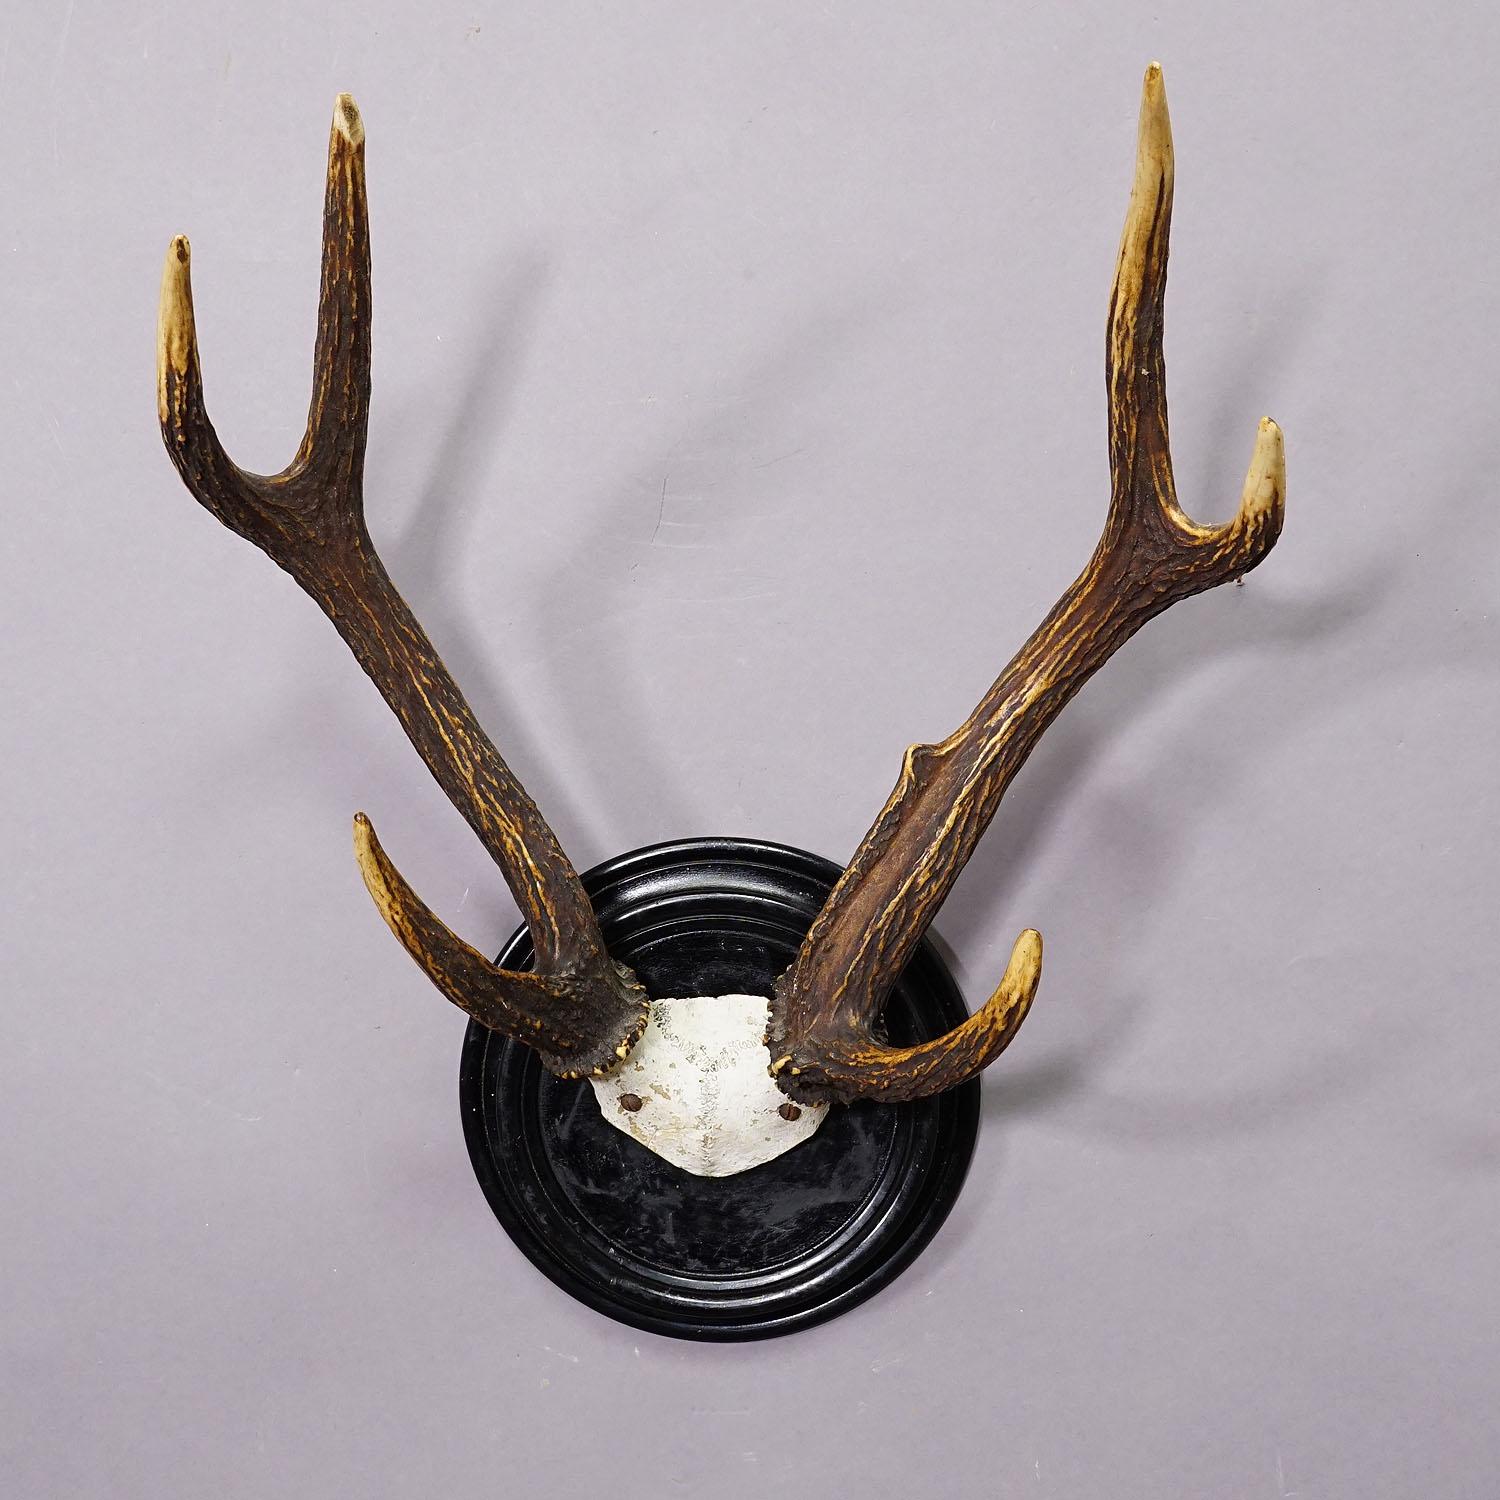 Antler Black Forest Sika Deer Trophy on Wooden Plaque - Germany ca. 1900s For Sale